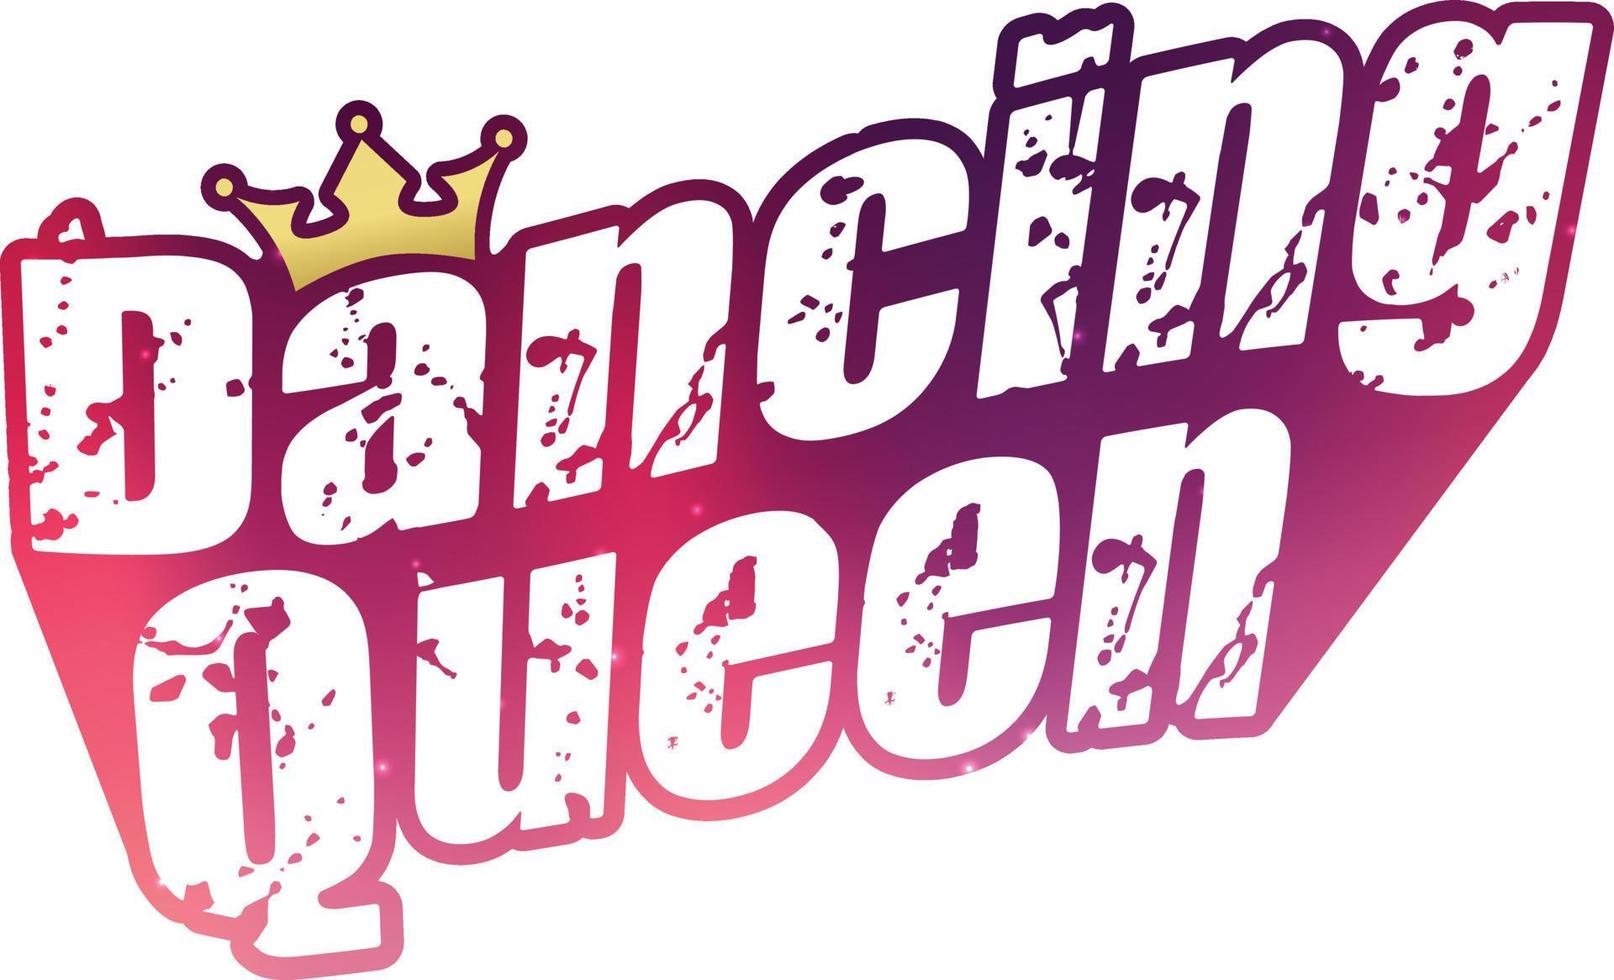 dansende koningin tekst met een kroon. roestige stijl op paars verloop. vector